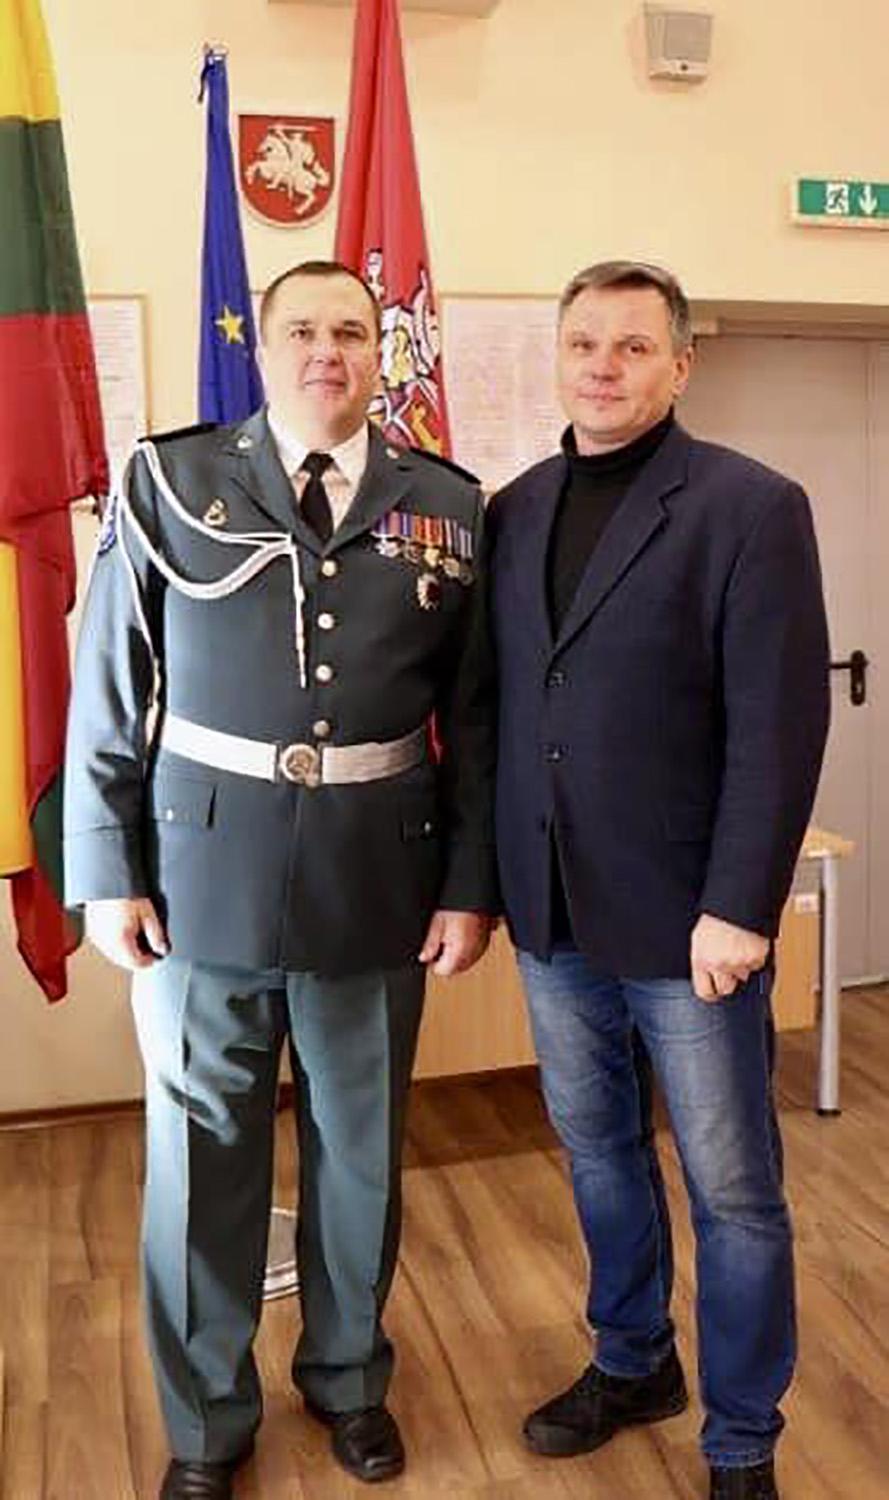 Policijoje dirbo 32-ejus metus / Ukmergės r. policijos komisariato viršininkas Saulius Kazlauskas (dešinėje) padėkojo Sigitui Kalesnykui už tarnybą policijoje